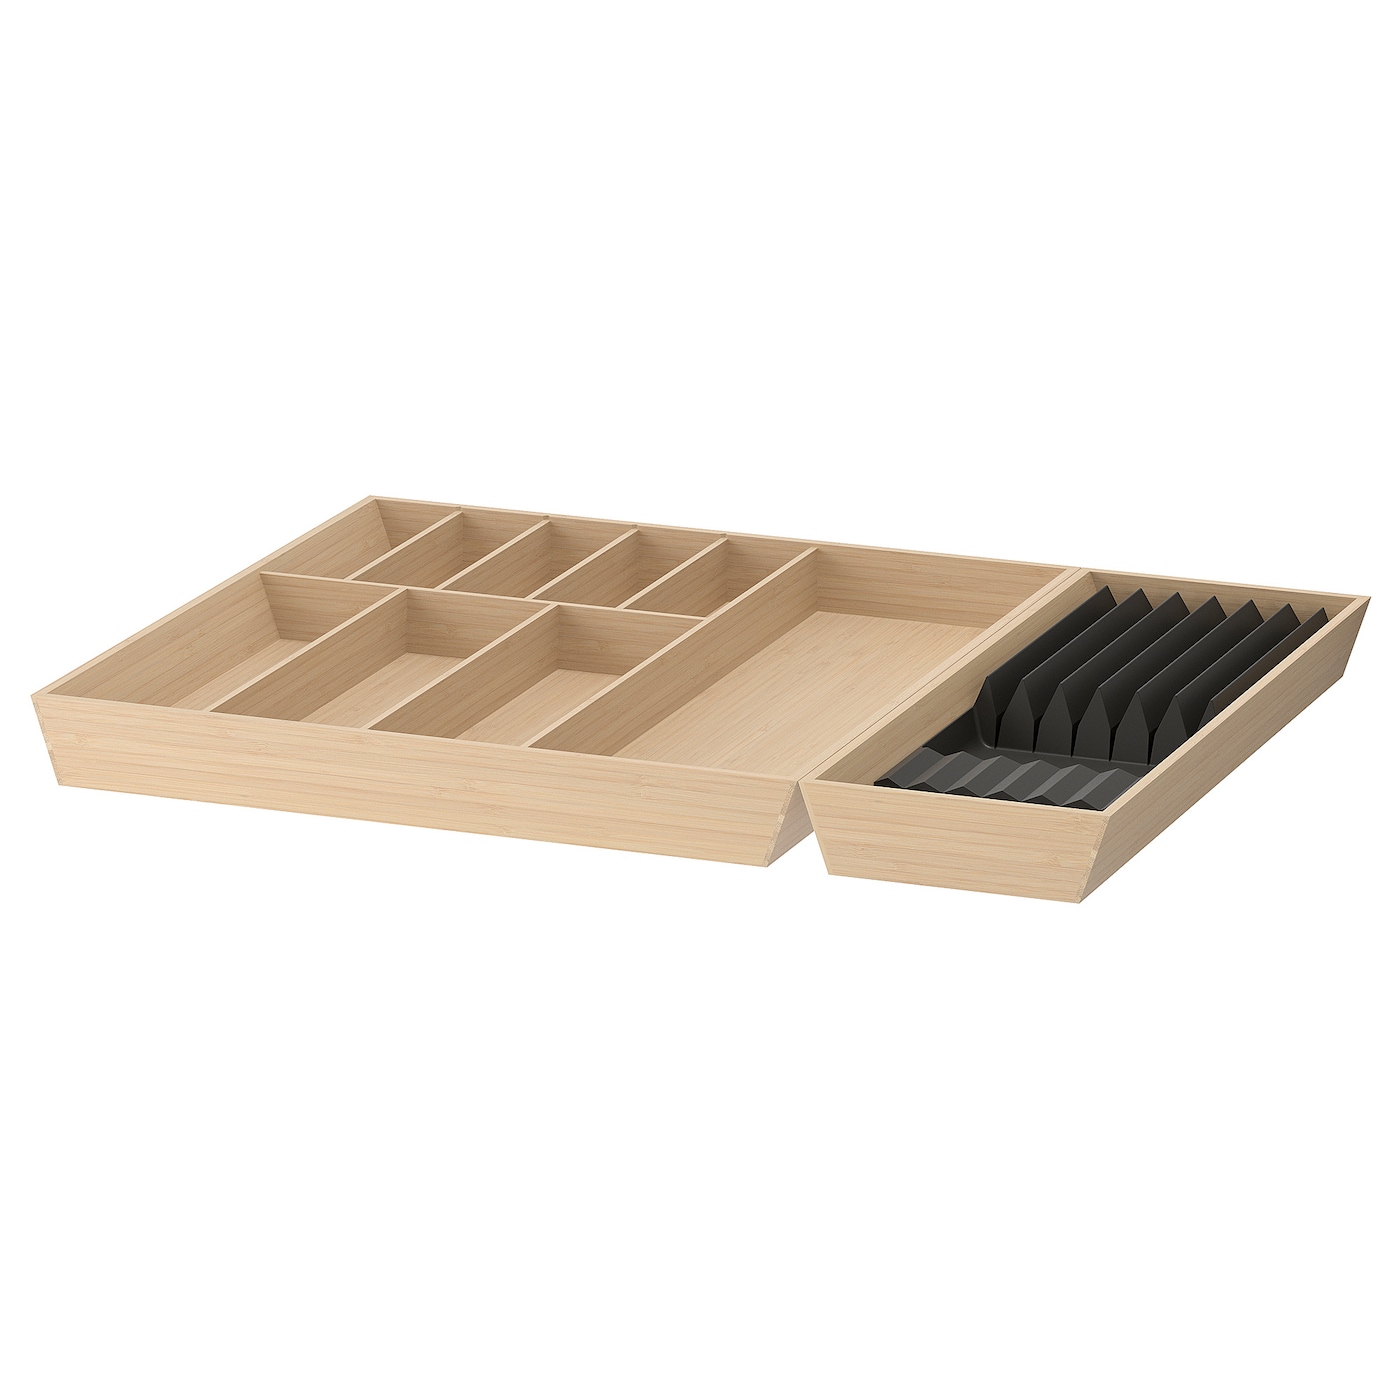 Поднос для столовых приборов - IKEA UPPDATERA, 72x50 см, антрацит/бамбук, УППДАТЕРА ИКЕА